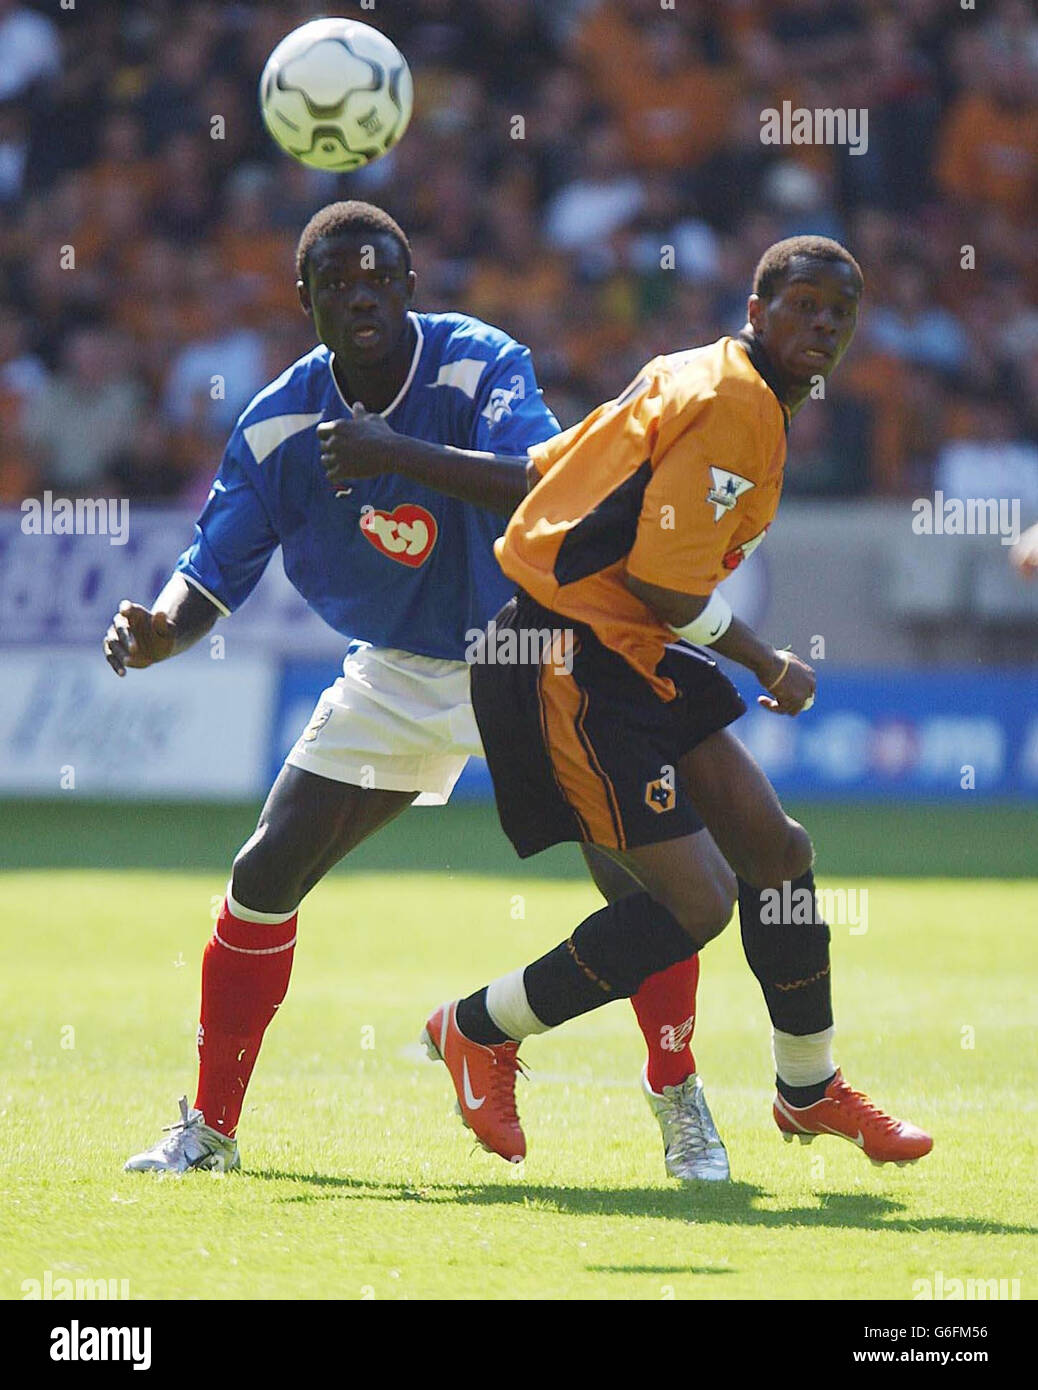 Amdy Faye, defensor de Portsmouth, lucha con Wolverhampton Wanderers Henri Camara (R), durante su partido de Premiership de la FA en el campo Molineux de Wolves. Foto de stock